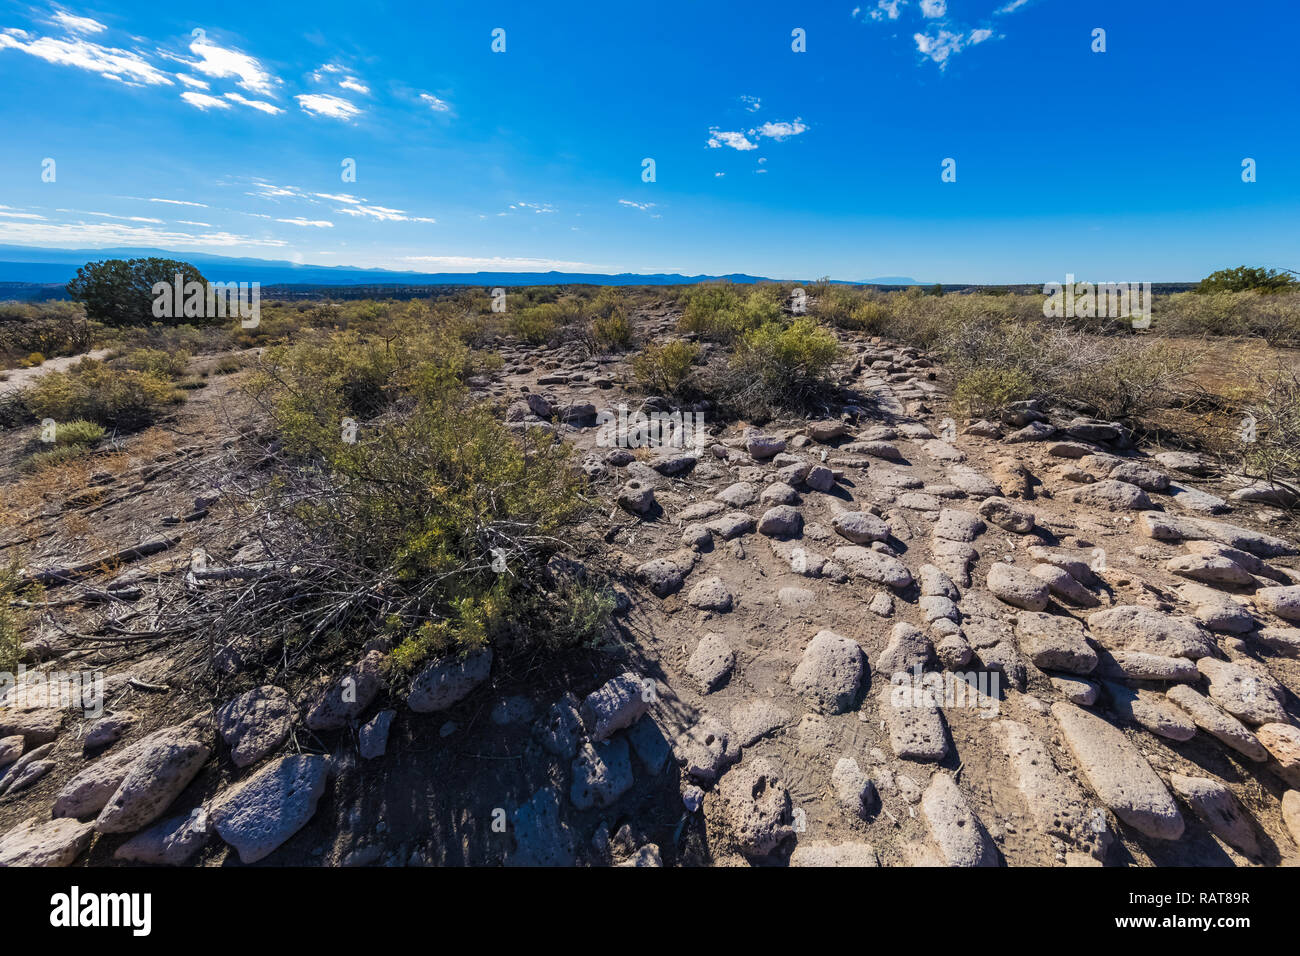 Des pierres qui faisaient autrefois partie de l'édification de murs à l'Tsankawi Sites préhistoriques en Bandelier National Monument, près de Los Alamos, Nouveau Mexique Banque D'Images